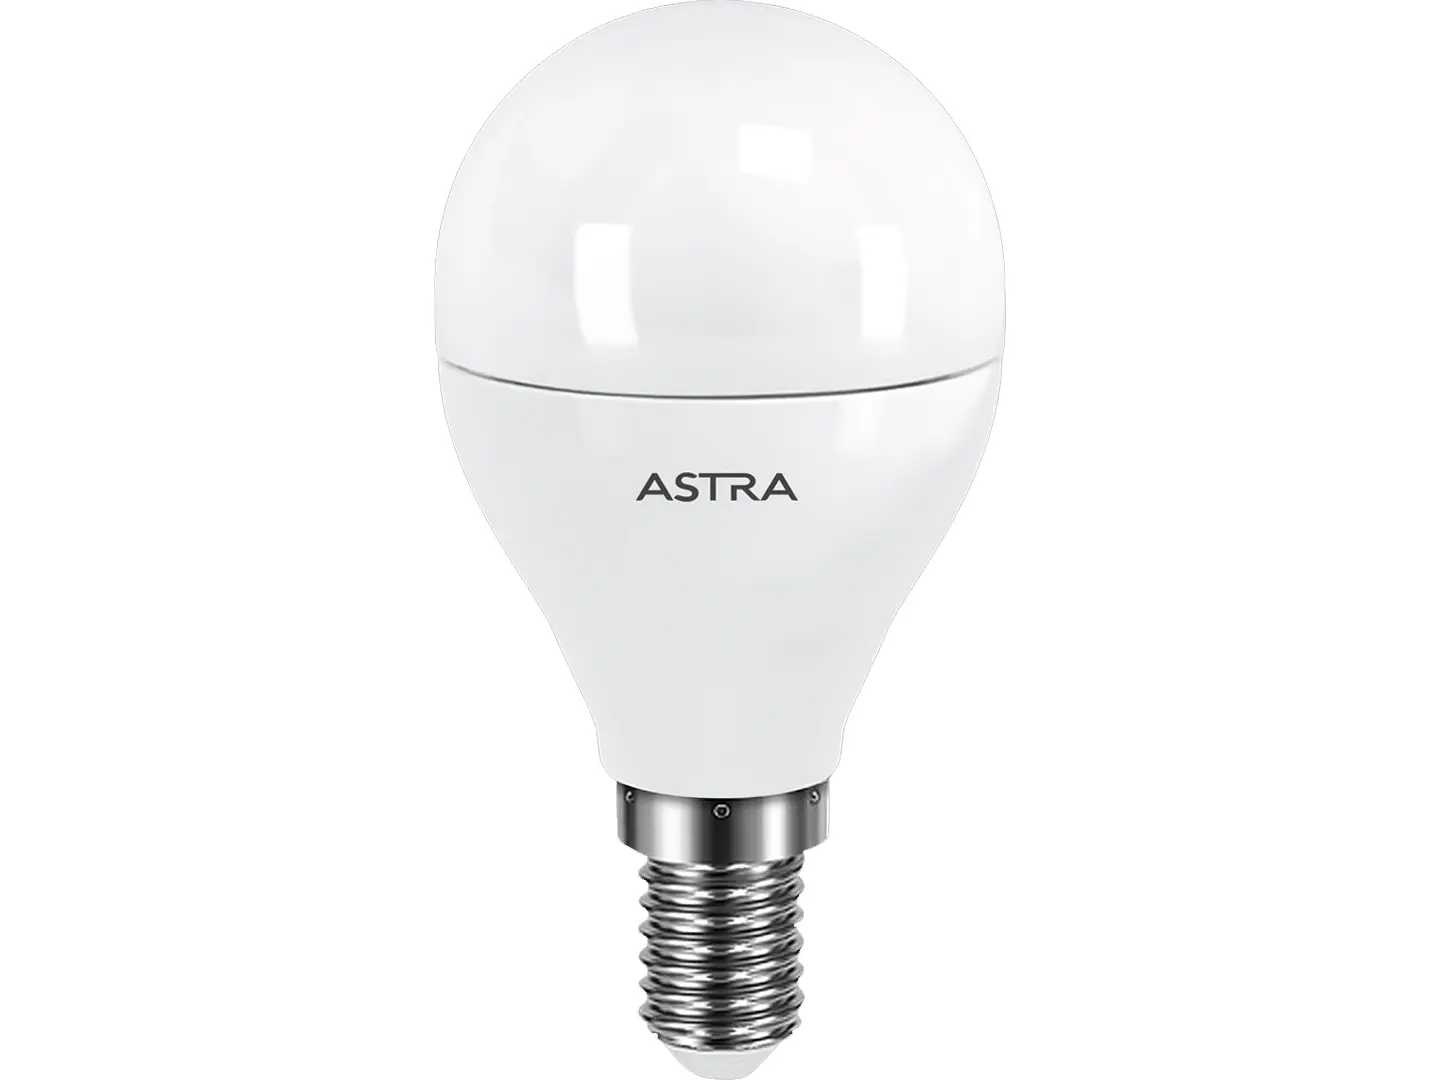 Лампа светодиодная ASTRA G45 7W E14 4000K; Штрихкод 8712879139386; страна происхождения (производства) - Китай